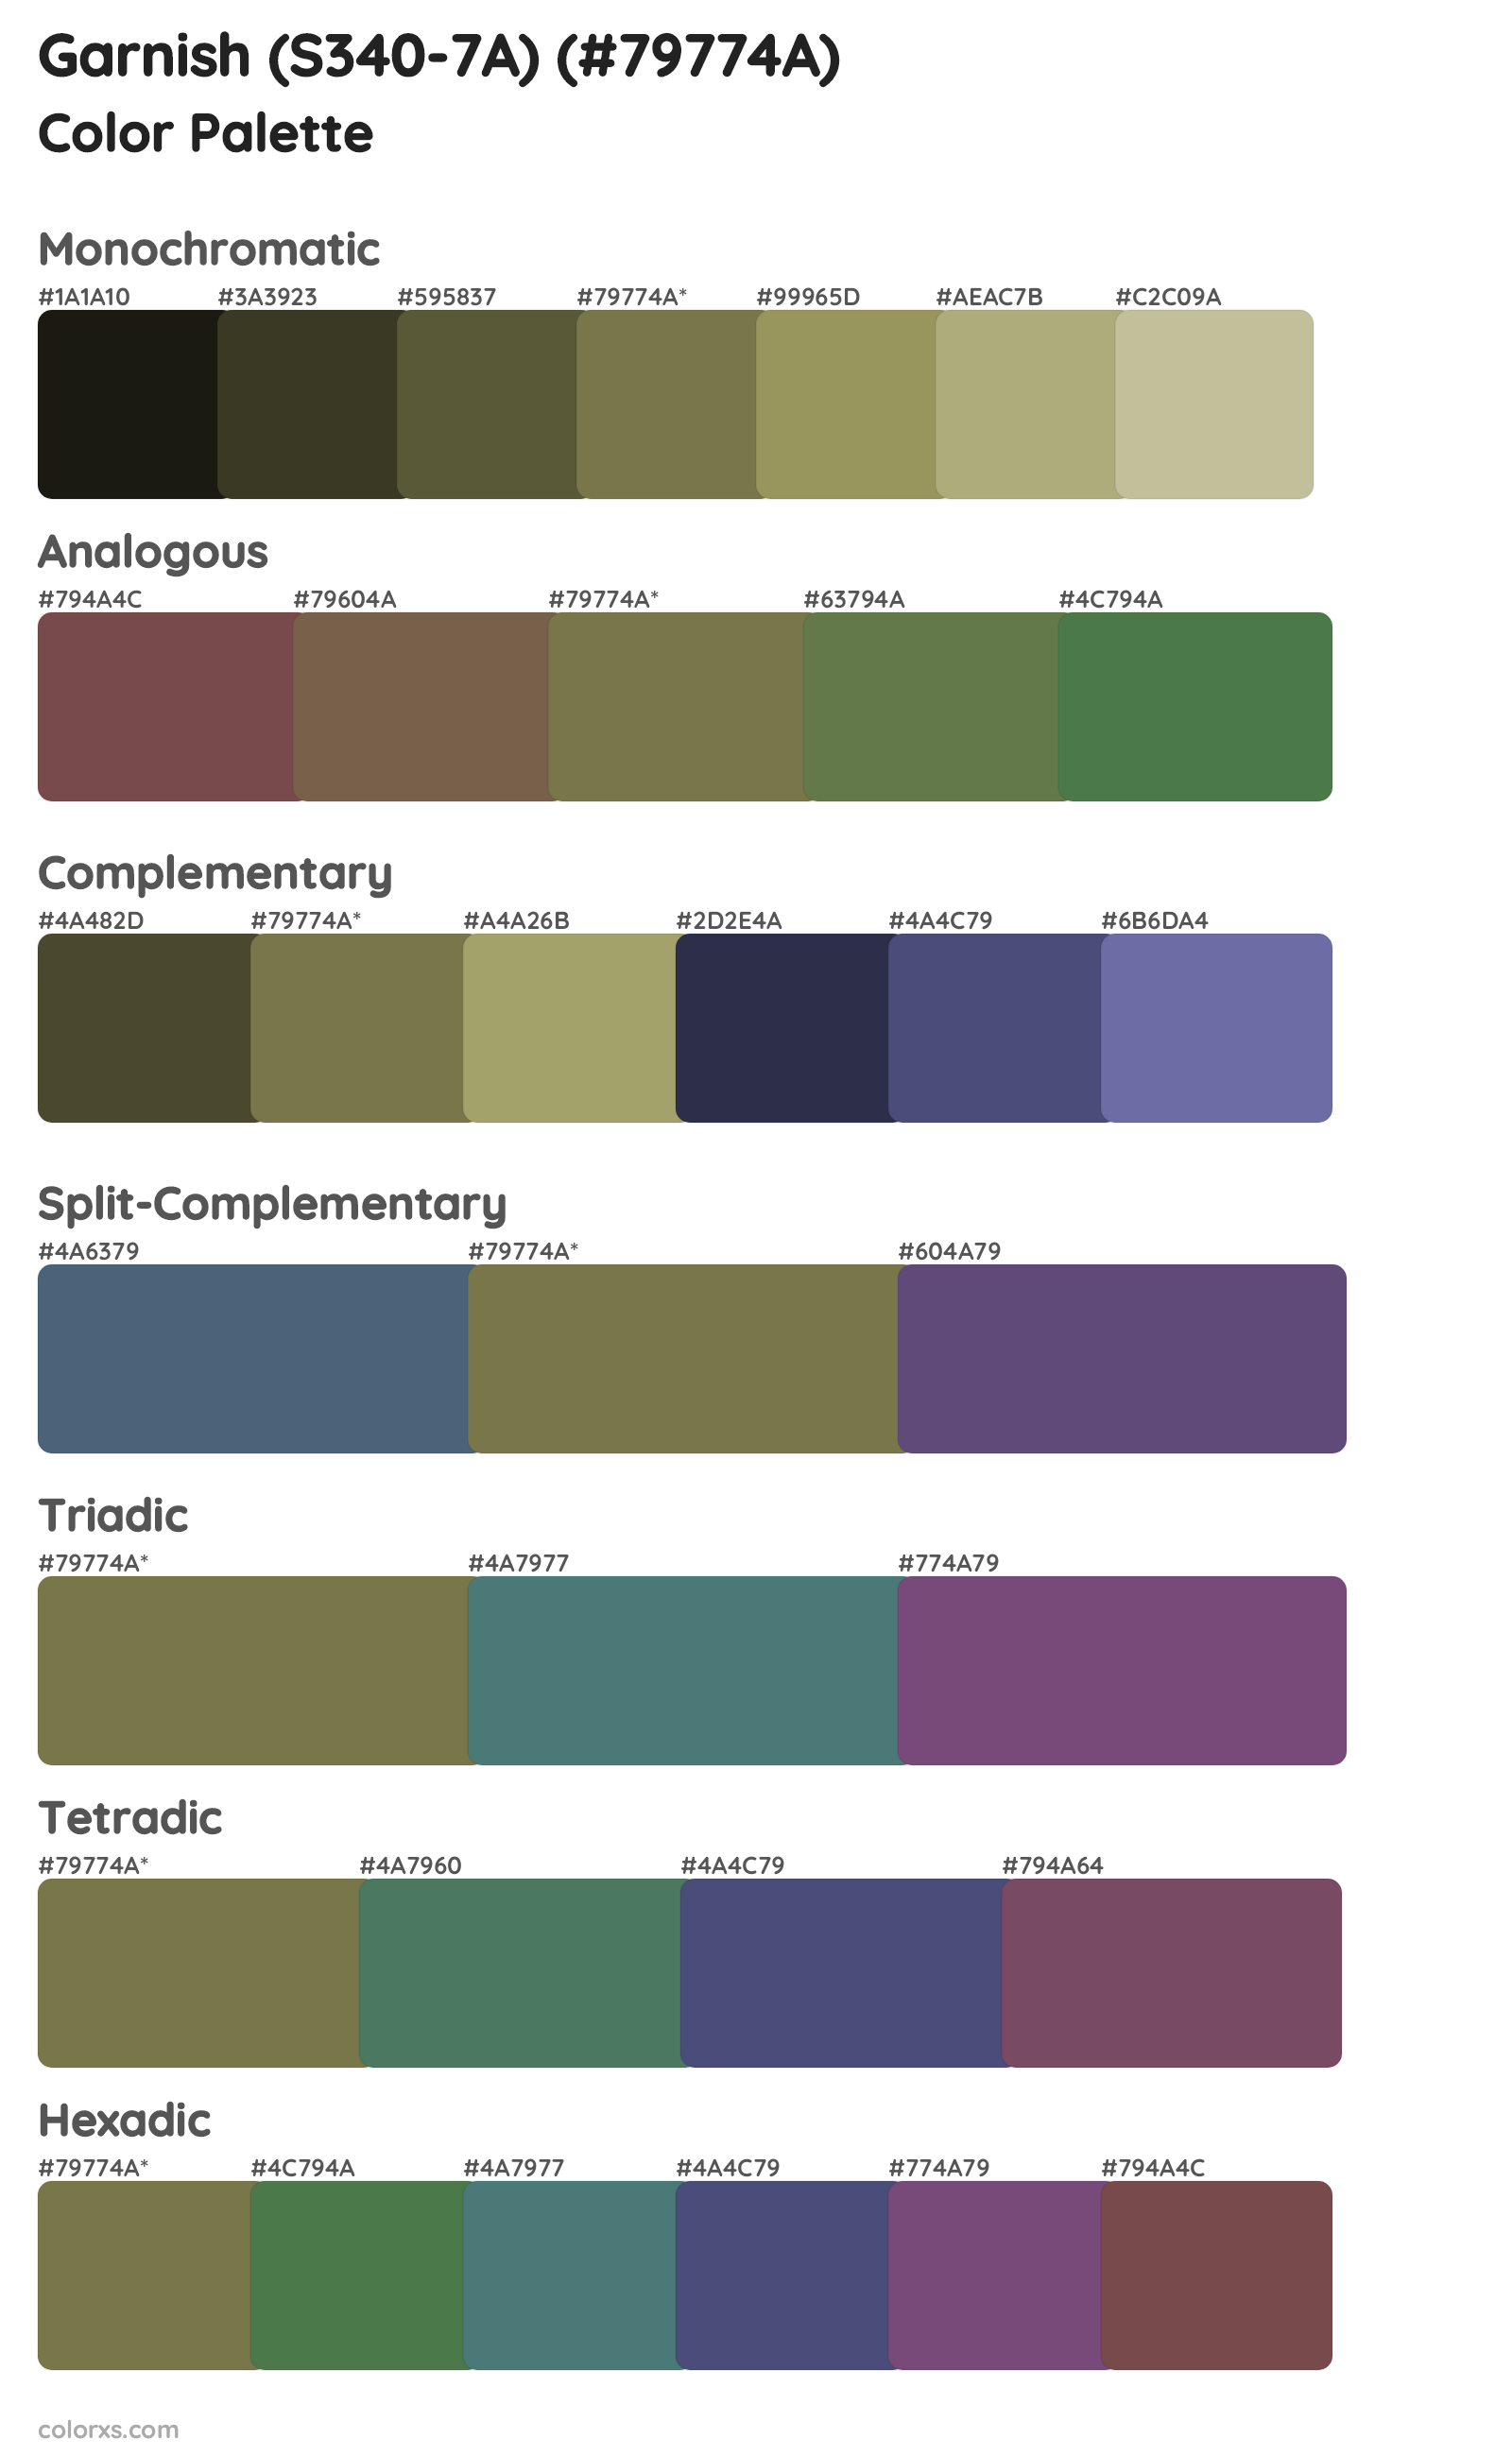 Garnish (S340-7A) Color Scheme Palettes